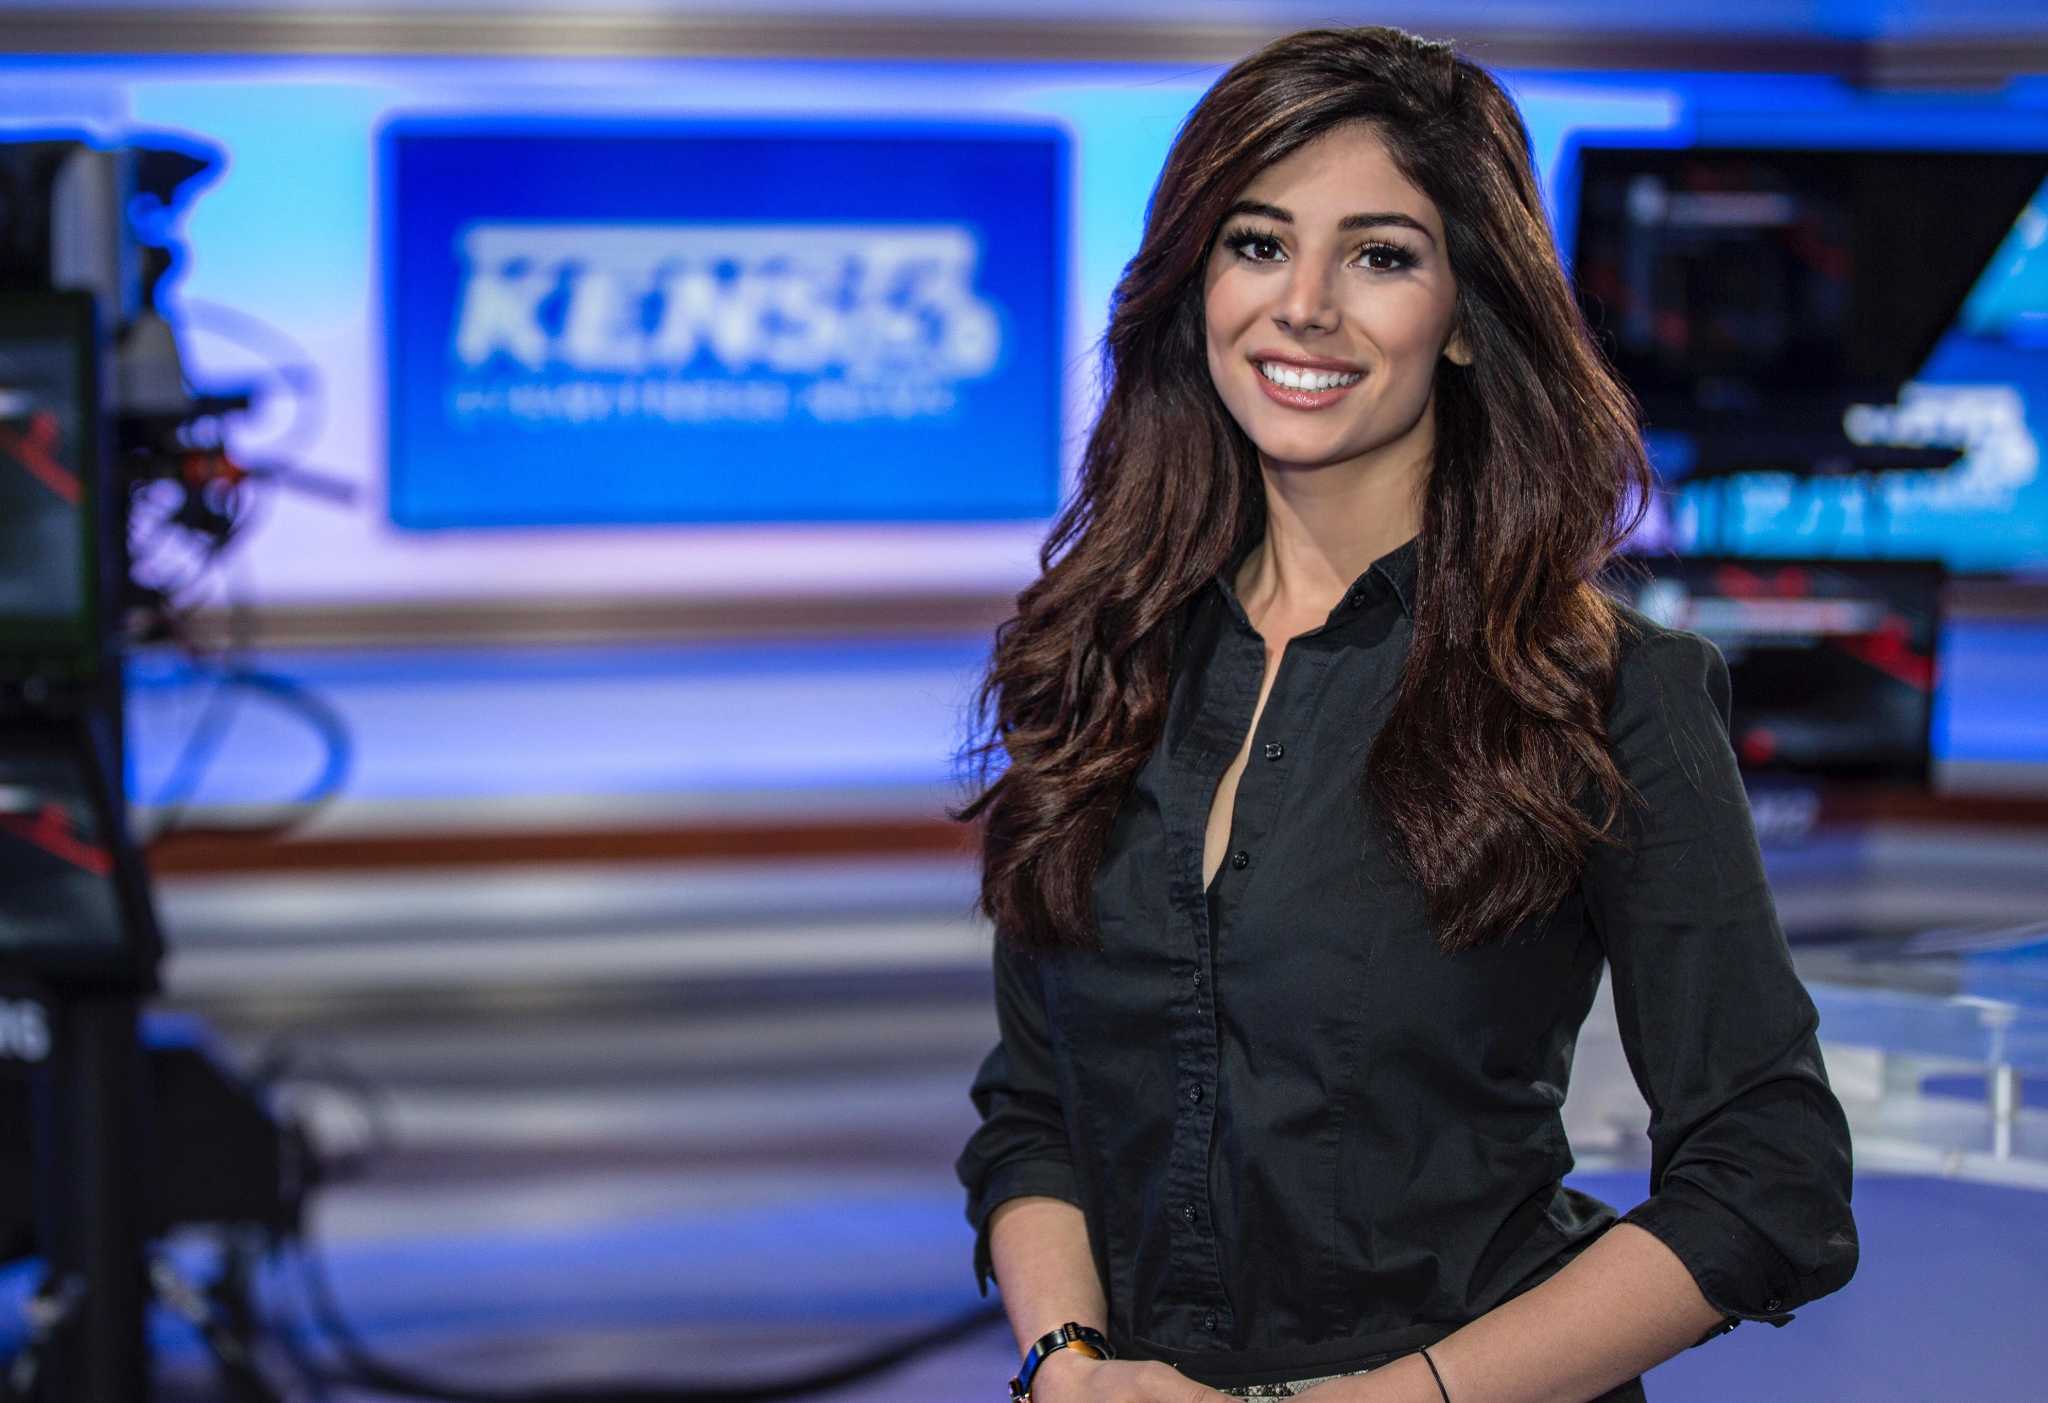 Very sexy girl news anchor